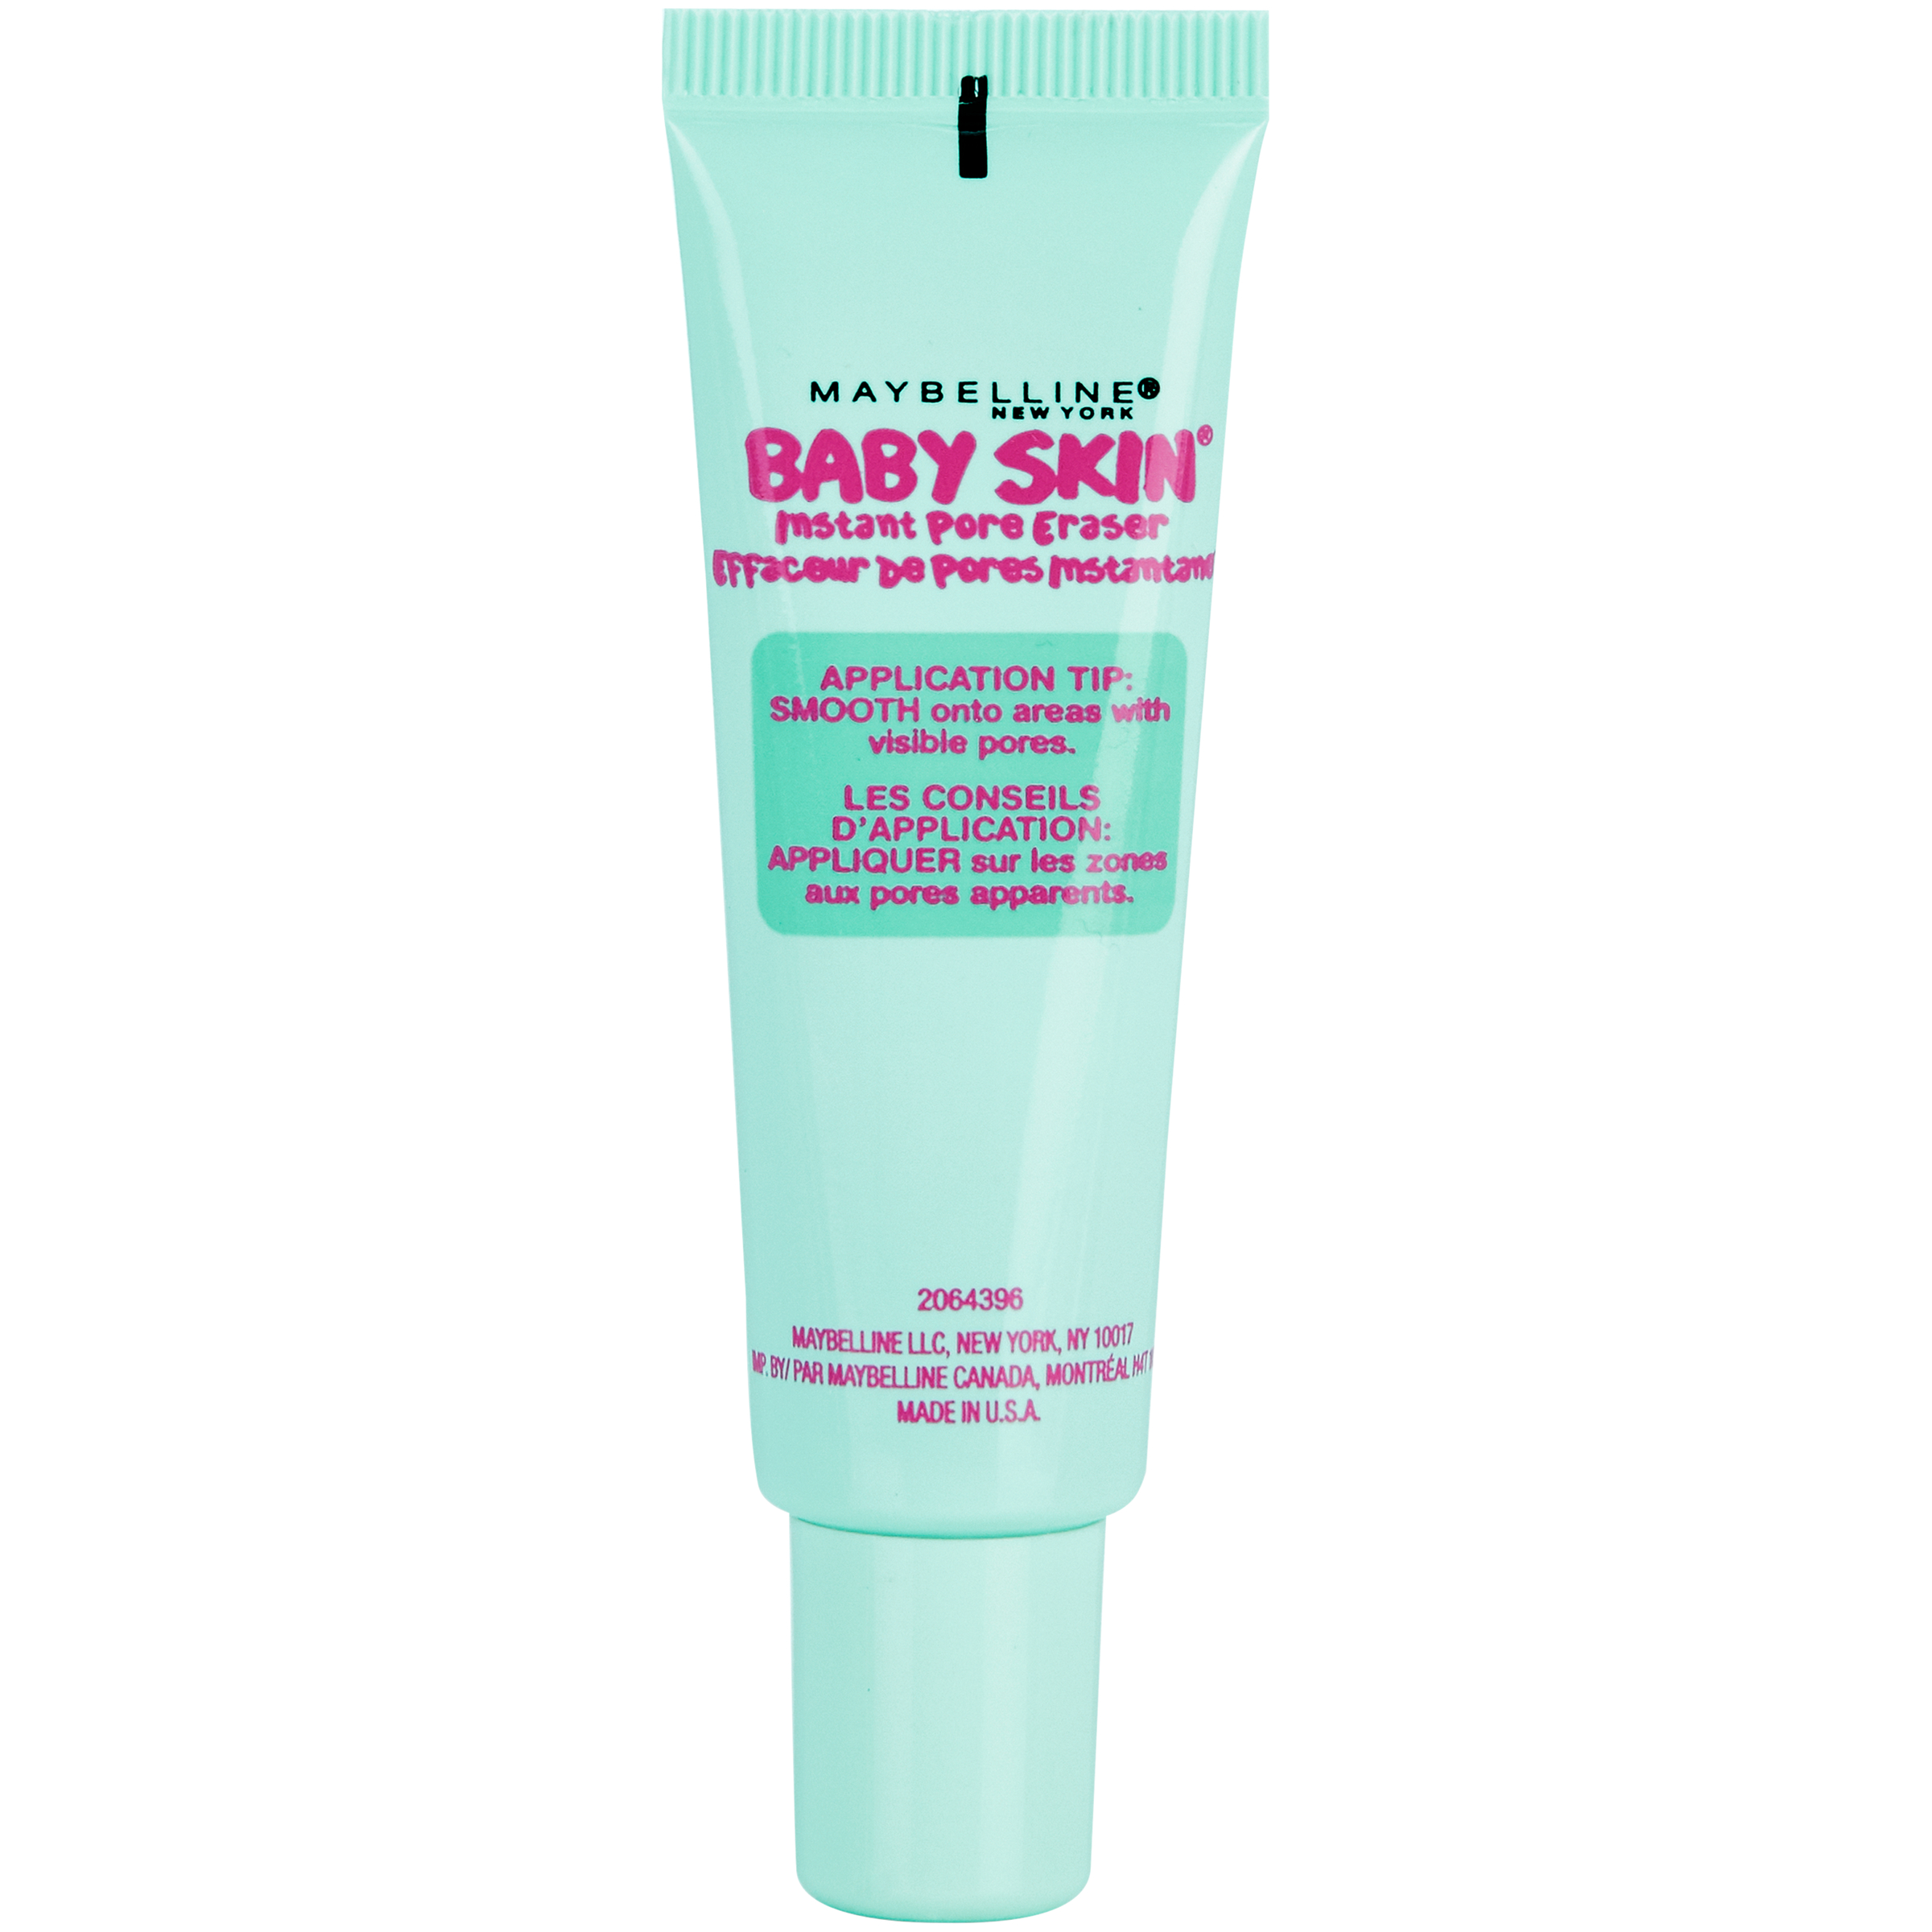 Maybelline Baby Skin Instant Pore Eraser Primer, Clear, 0.67 fl oz - image 5 of 12